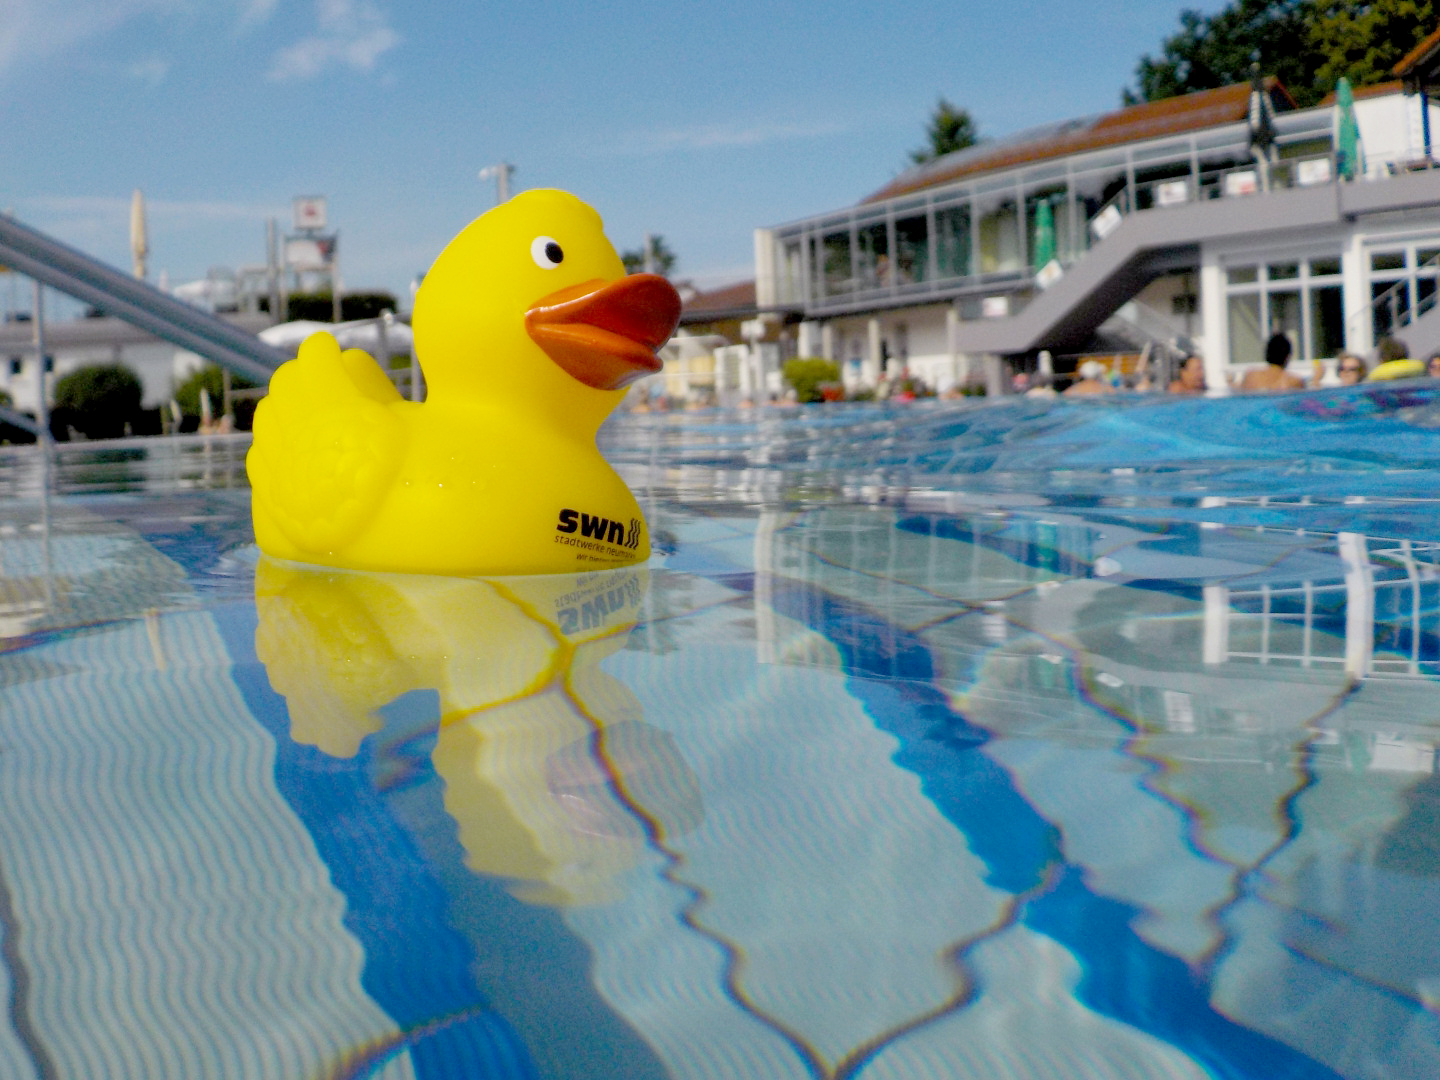 Schwimmkurse im Freibad: Erweitertes Angebot und neue Anbieter - Zusätzliche Termine bei Bedarf möglich